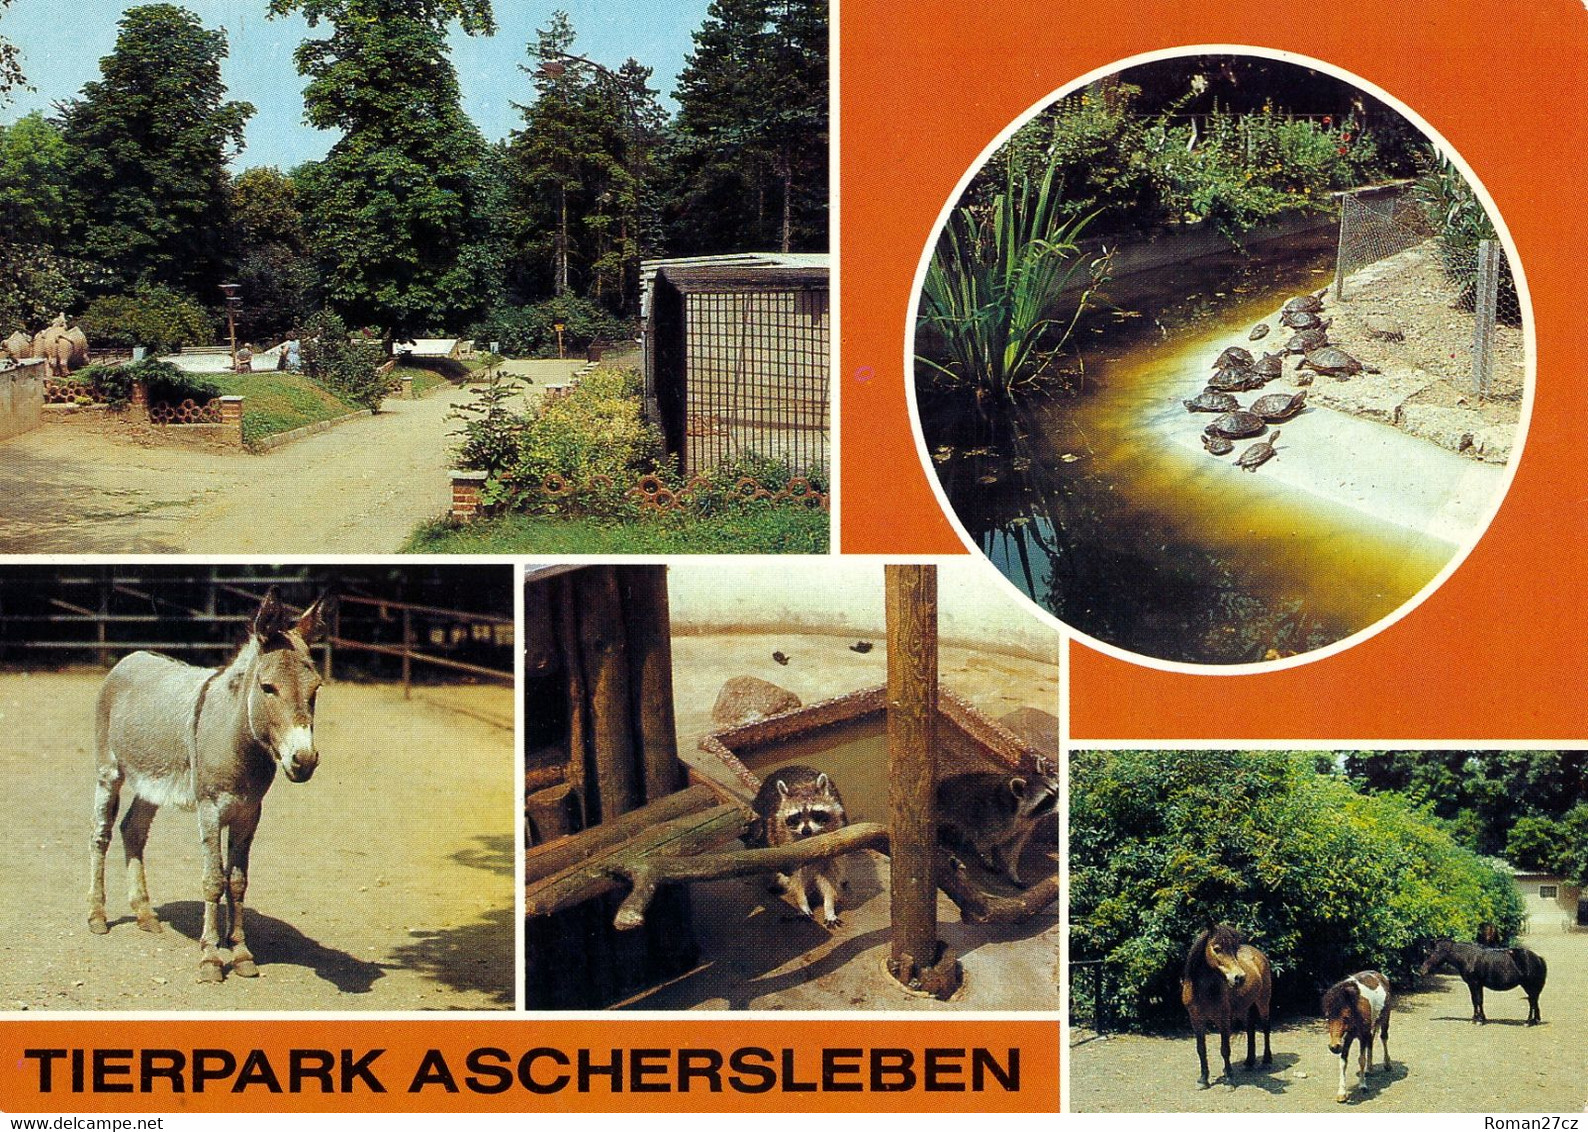 Tierpark Aschersleben, Germany - Donkey, Raccoon, Tortoises, Ponies - Aschersleben